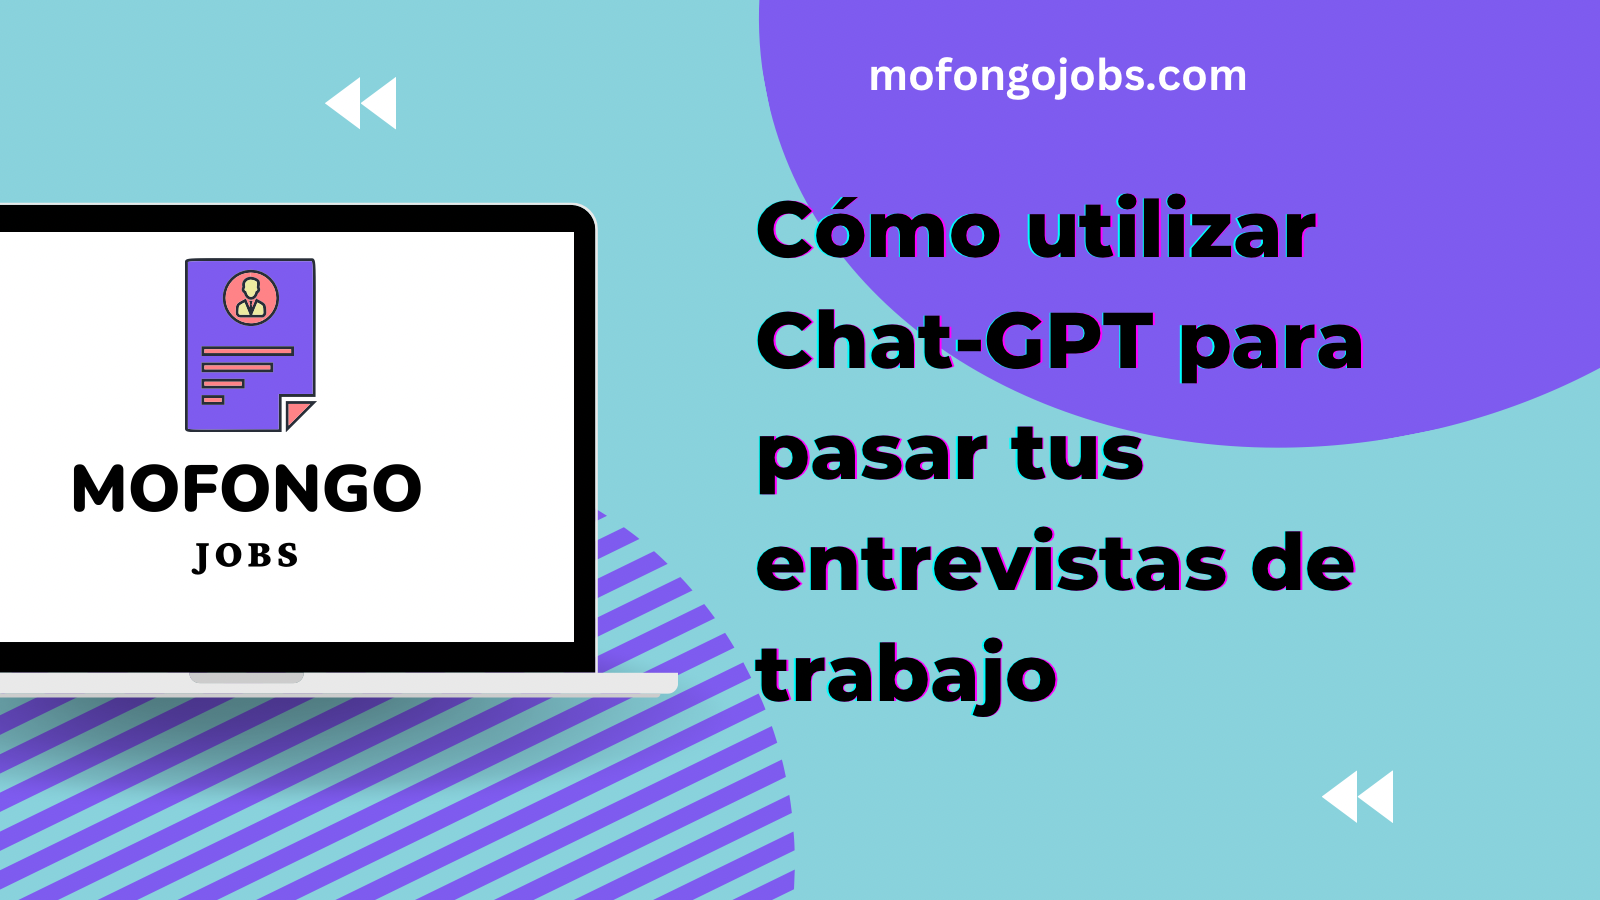 Laptop con el logo de mofongo jobs y un headline que dice Cómo utilizar Chat-GPT para pasar tus entrevistas de trabajo